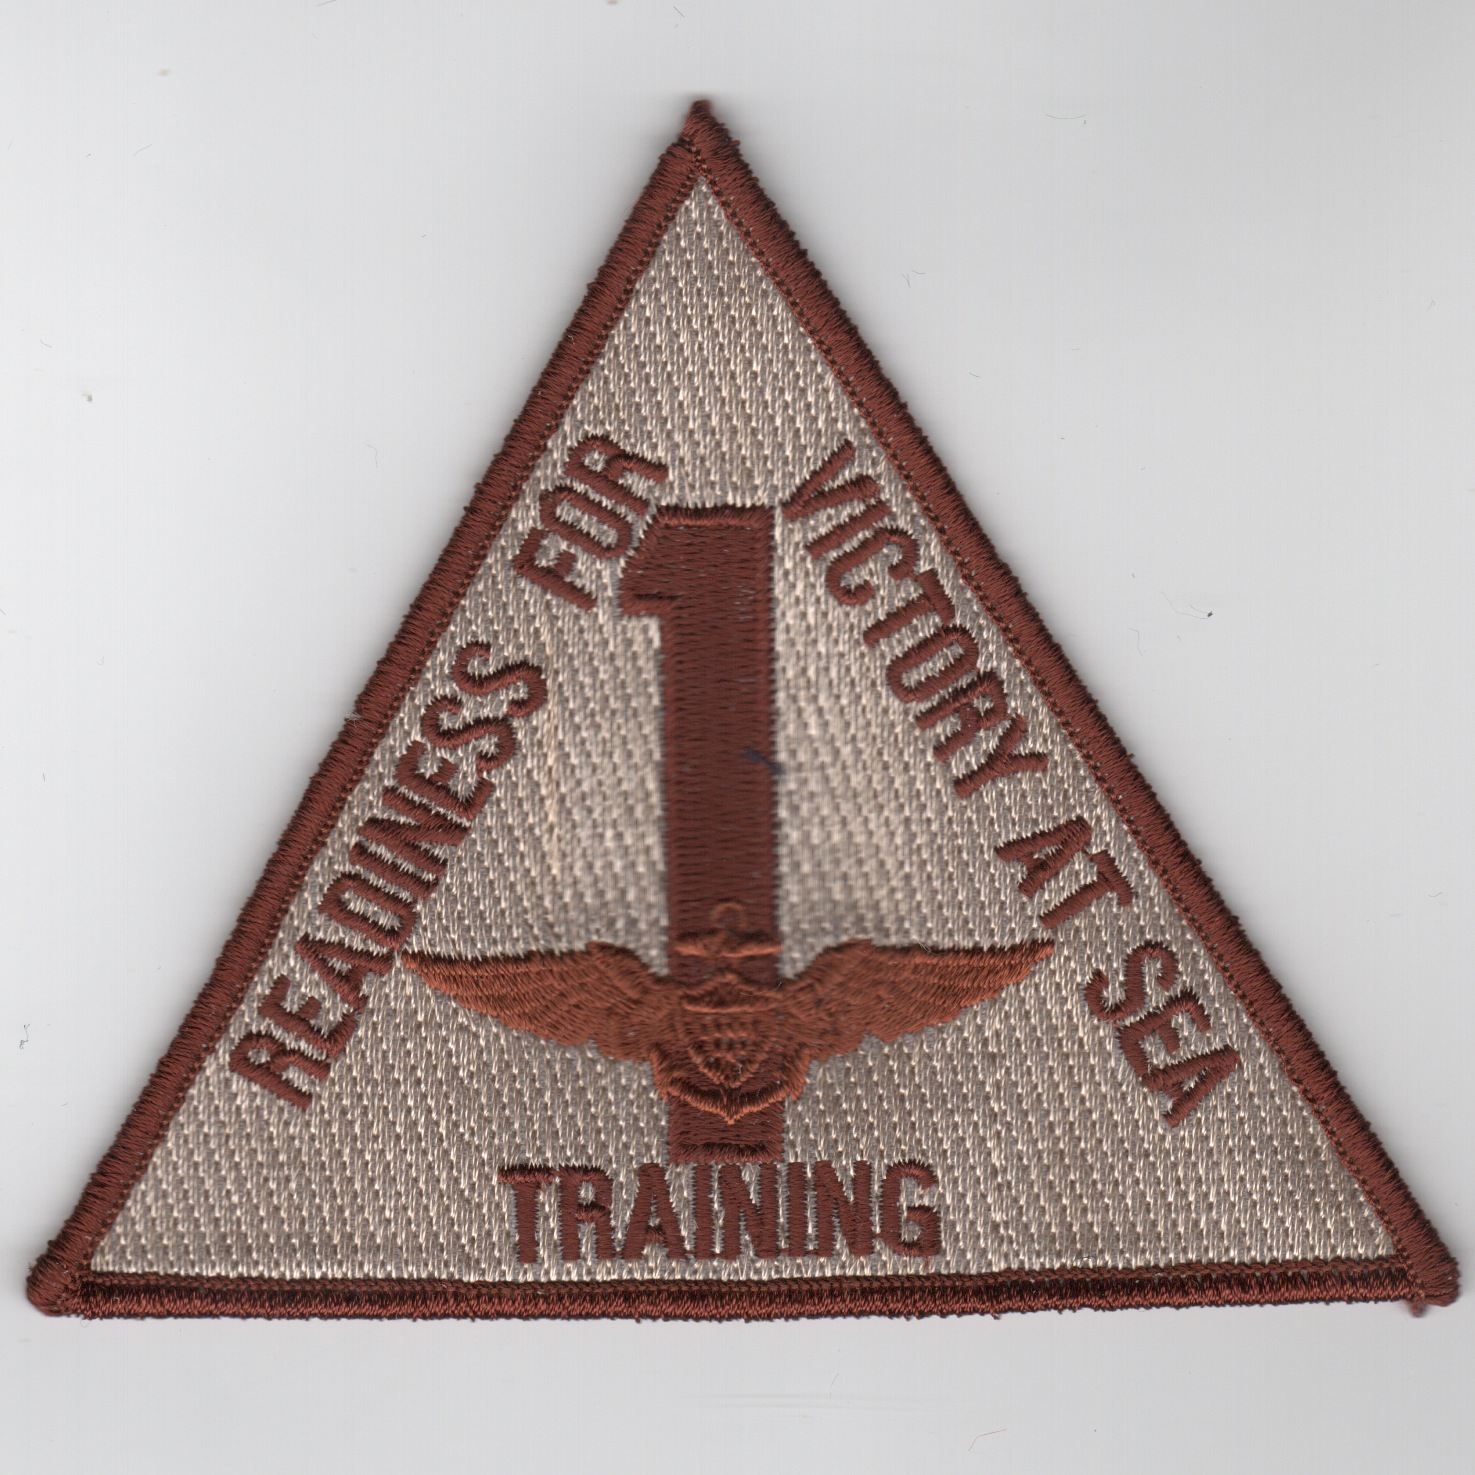 Training Wing 1 (Desert)